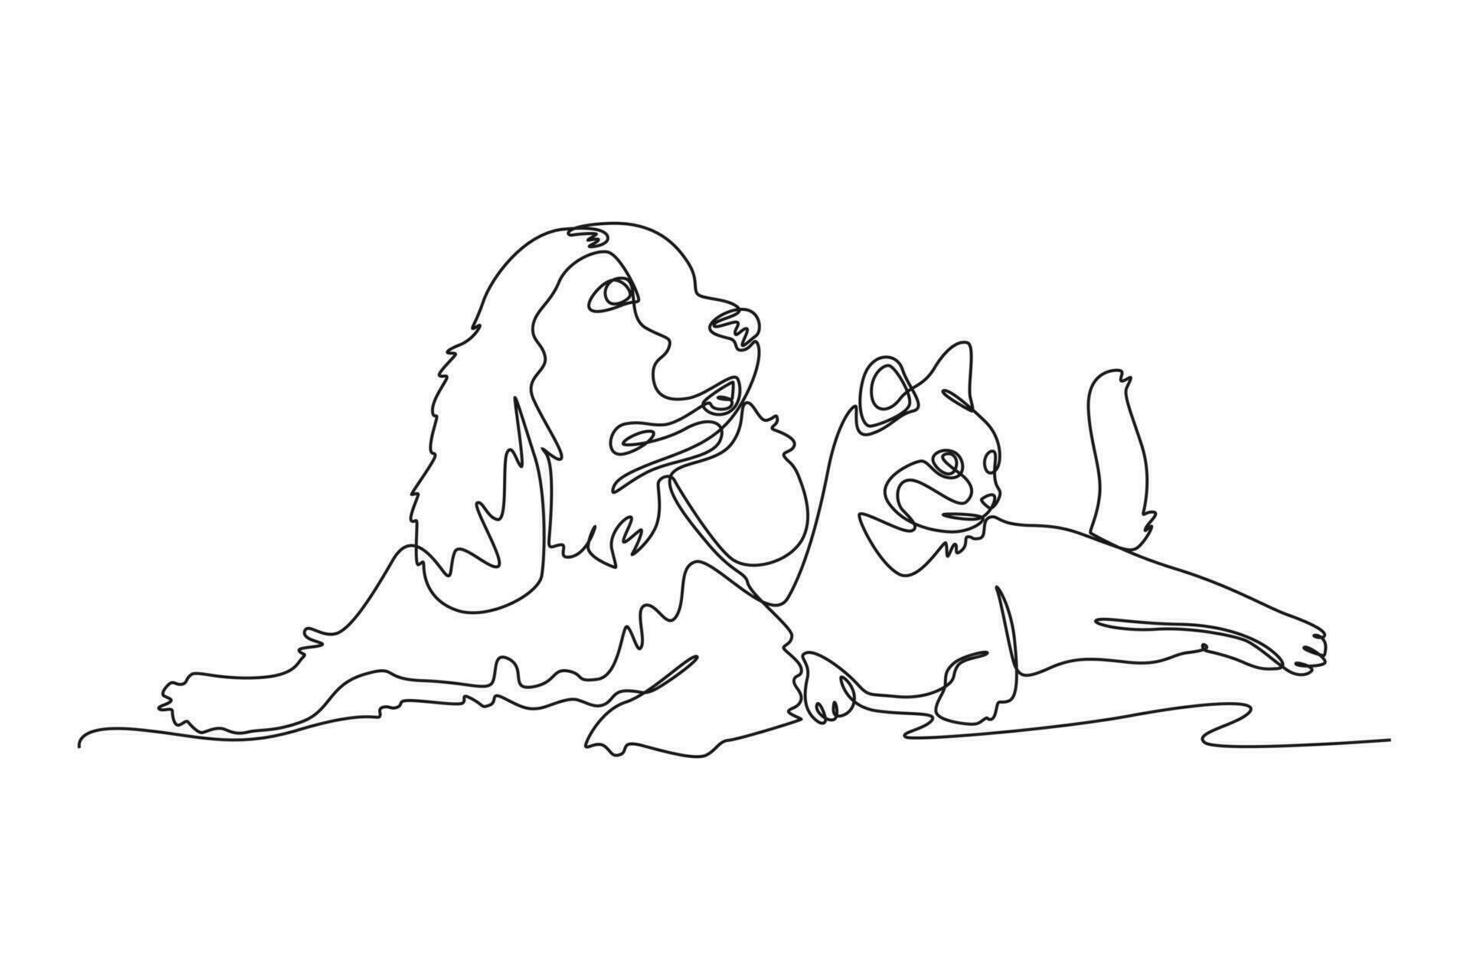 doorlopend een lijn tekening hond en kat. stedelijk huisdieren concept. single lijn trek ontwerp vector grafisch illustratie.